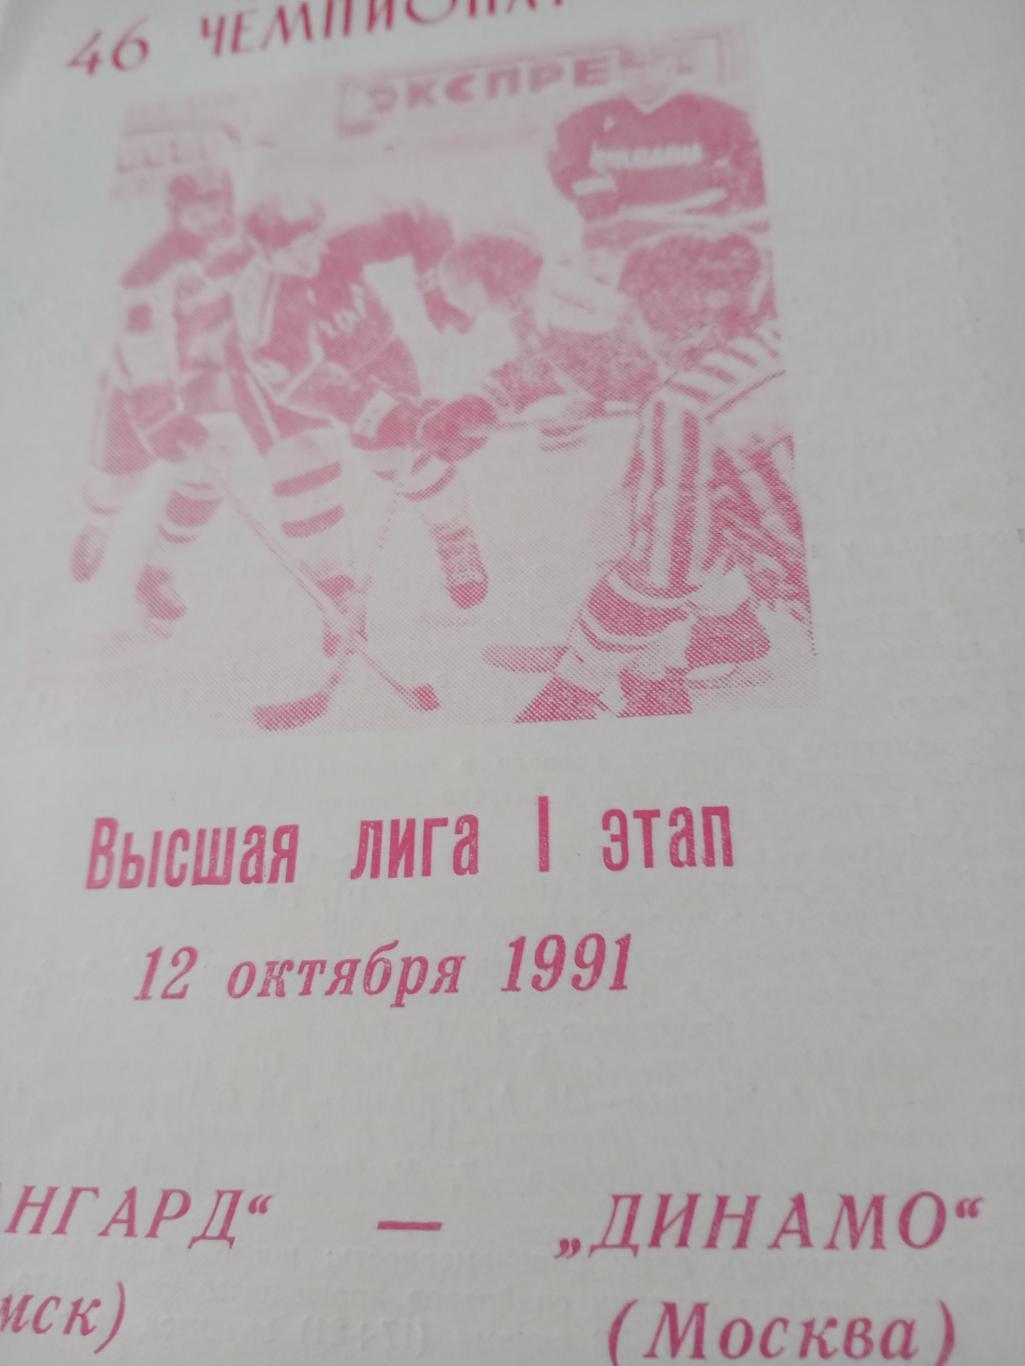 Авангард Омск - Динамо Москва. 12 октября 1991 год